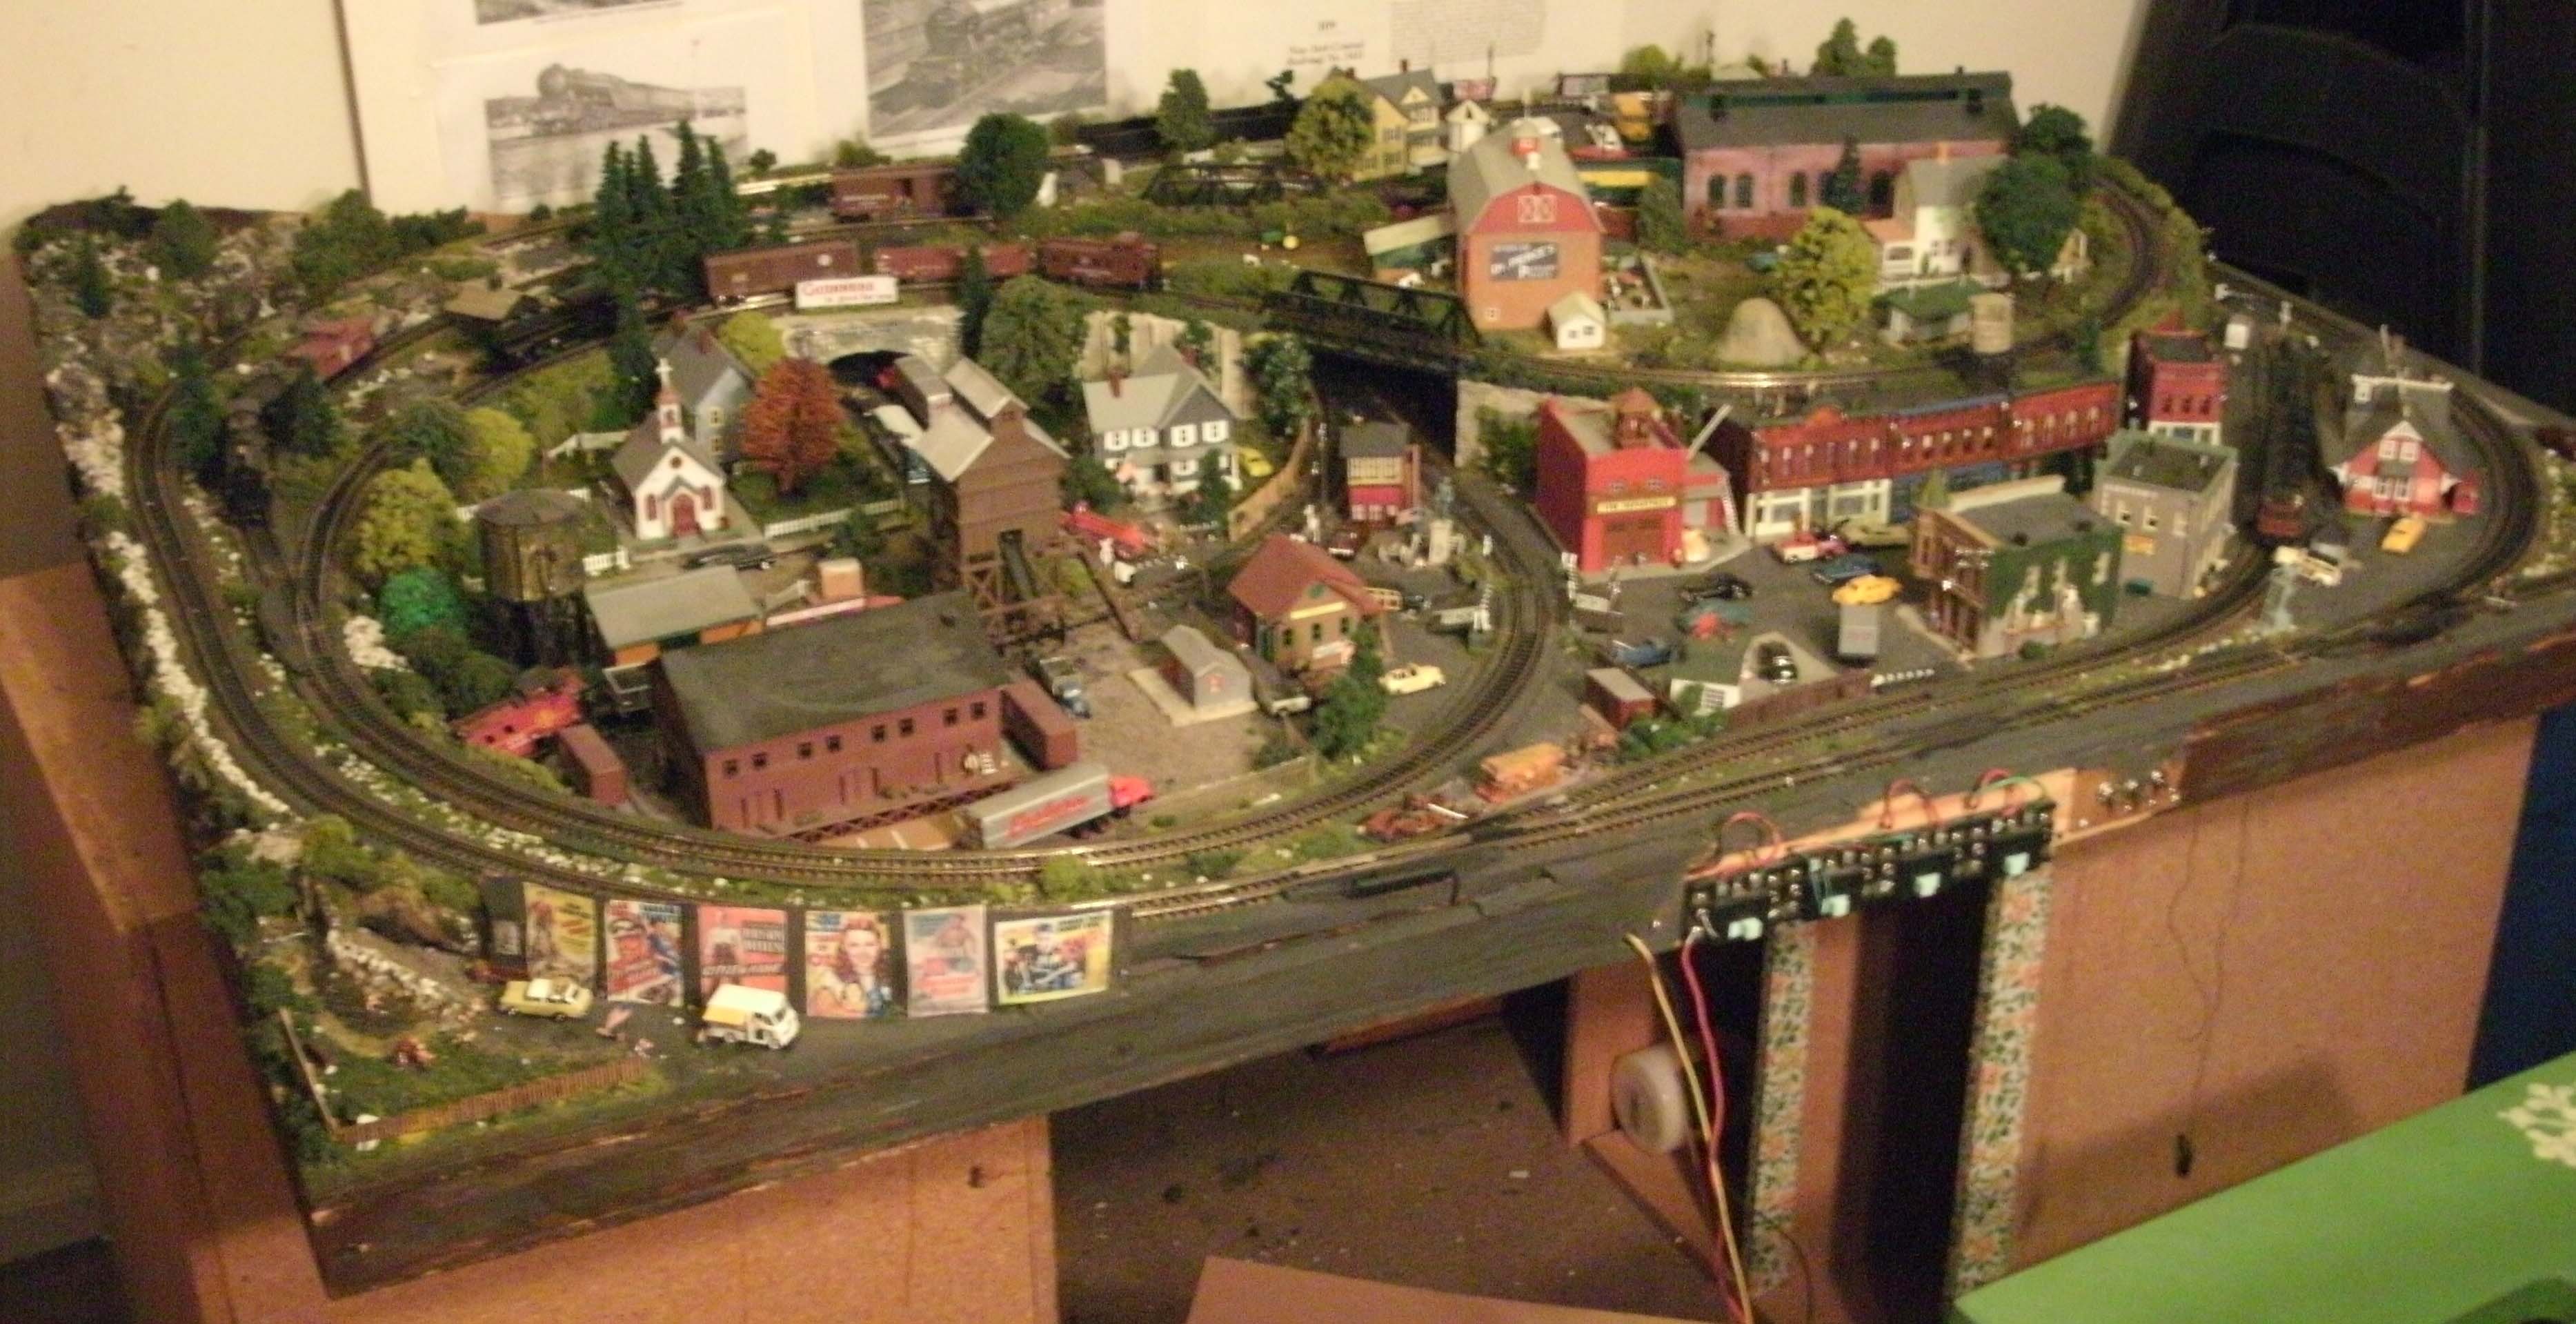 Model Train Layouts Geoff's n scale model railroad layout